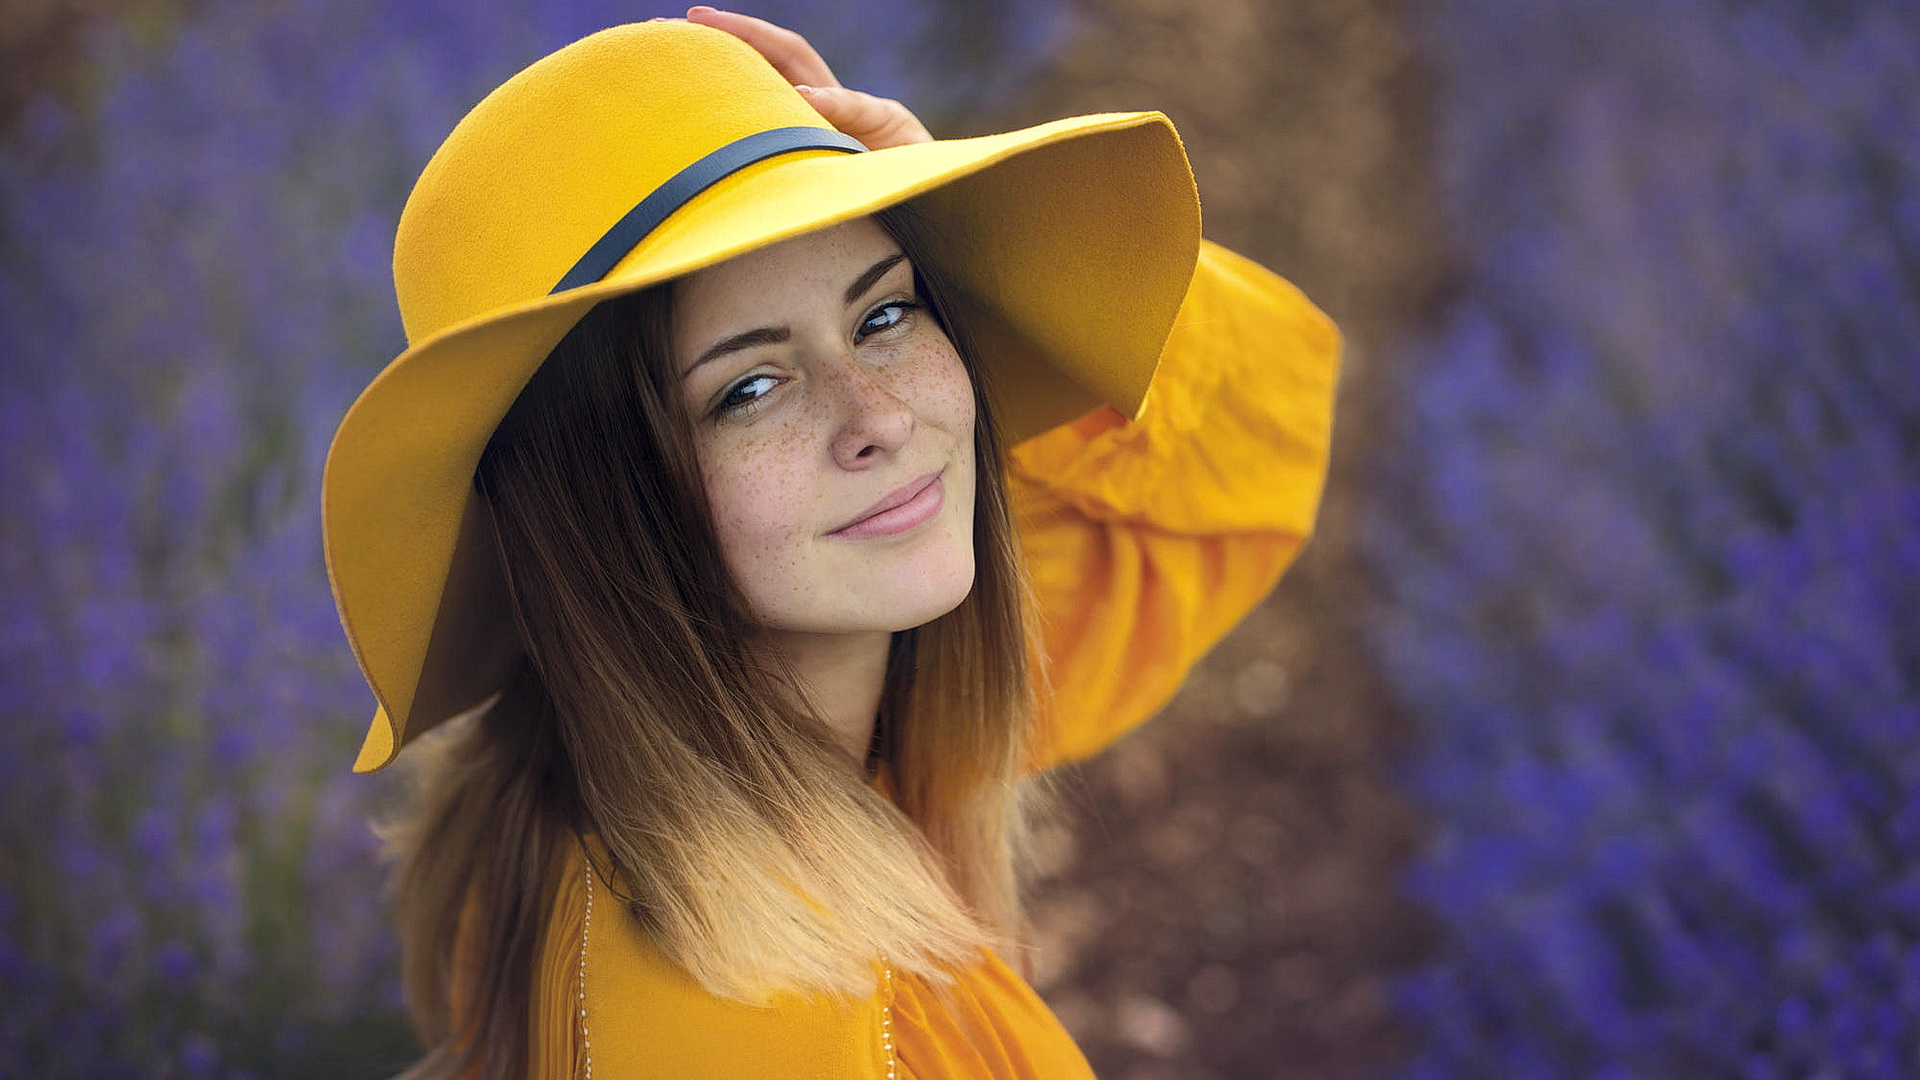 Конопатая девушка в желтом костюме с желтой шляпой